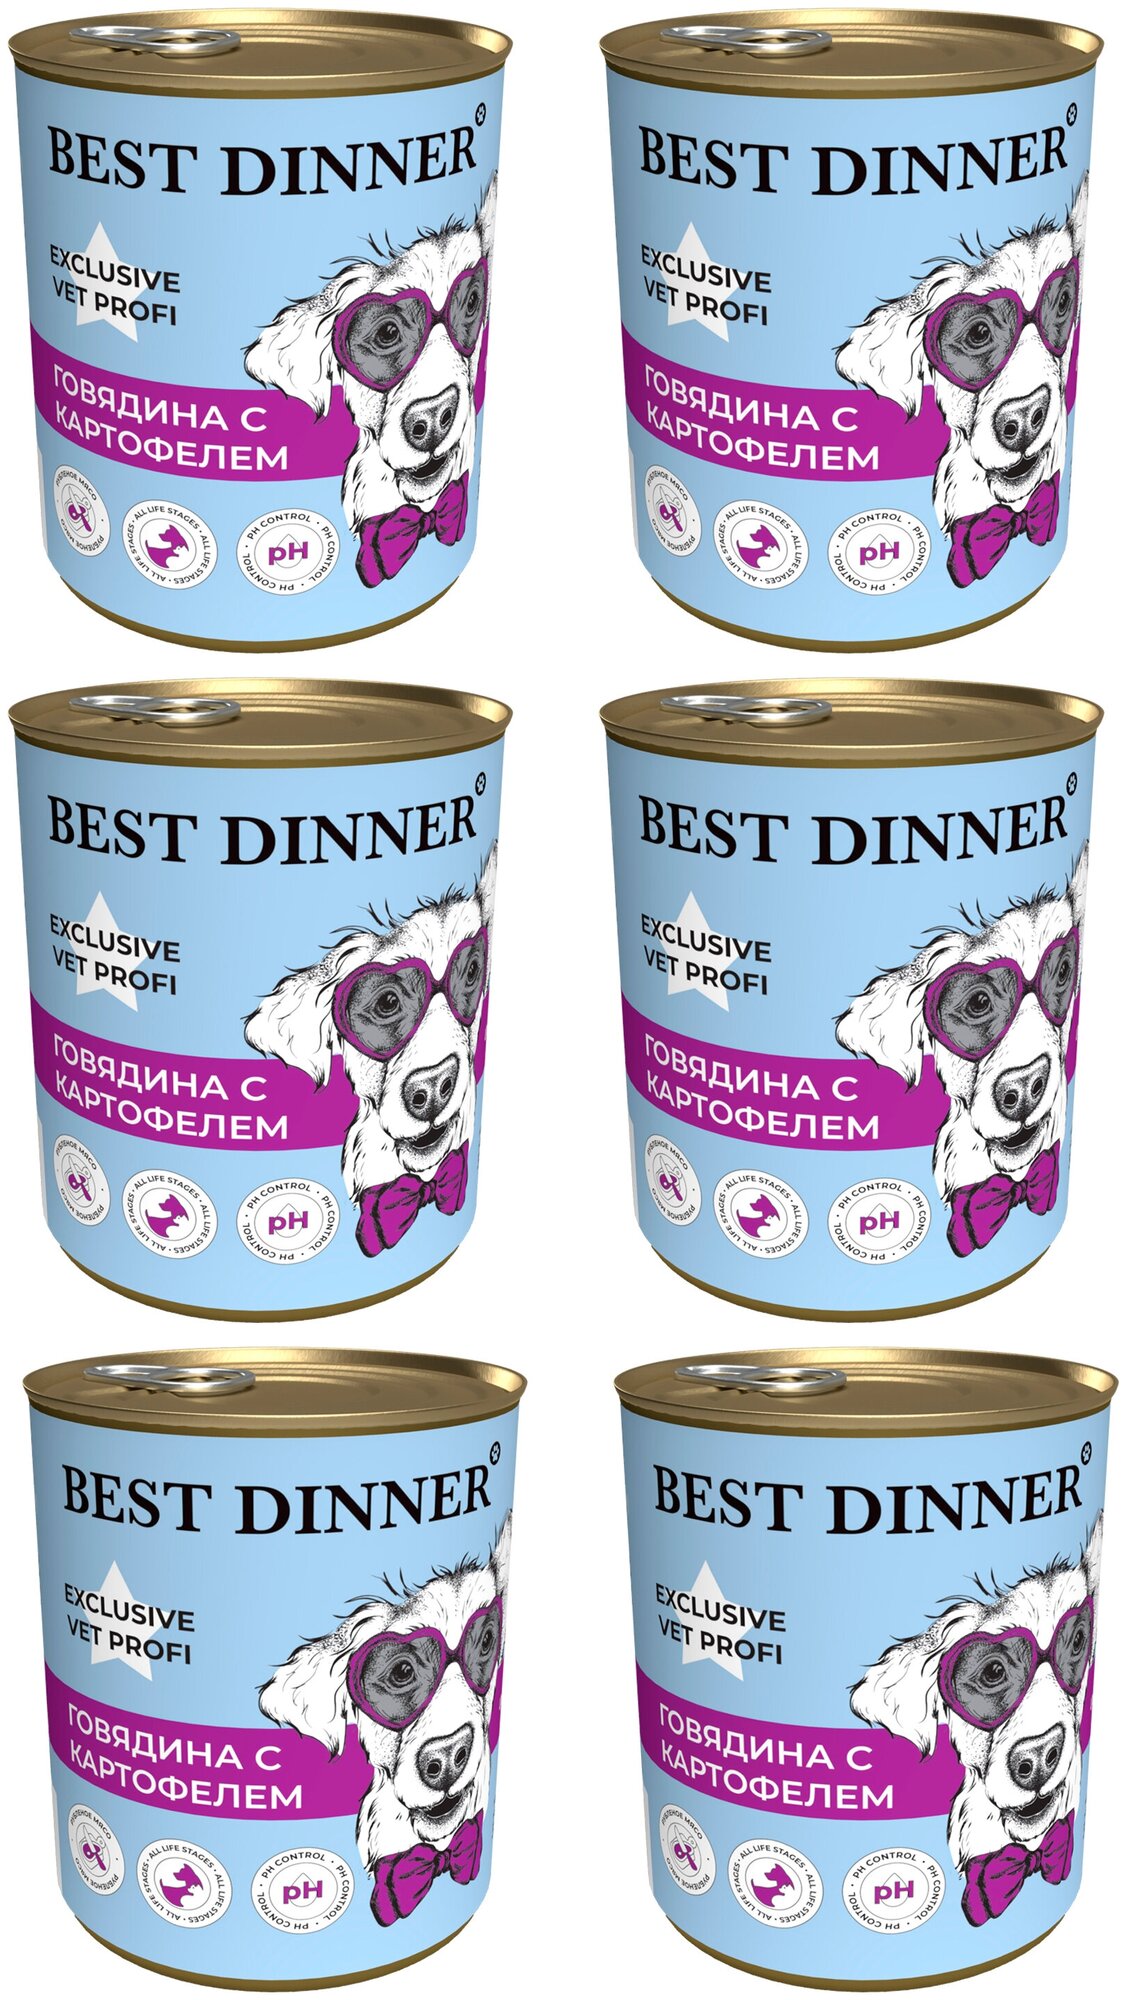 Влажный консервированный корм для собак Best Dinner Бест Диннер Urinary "Говядина с картофелем" Exclusive VET PROFI-340 гп. По 6 шт.